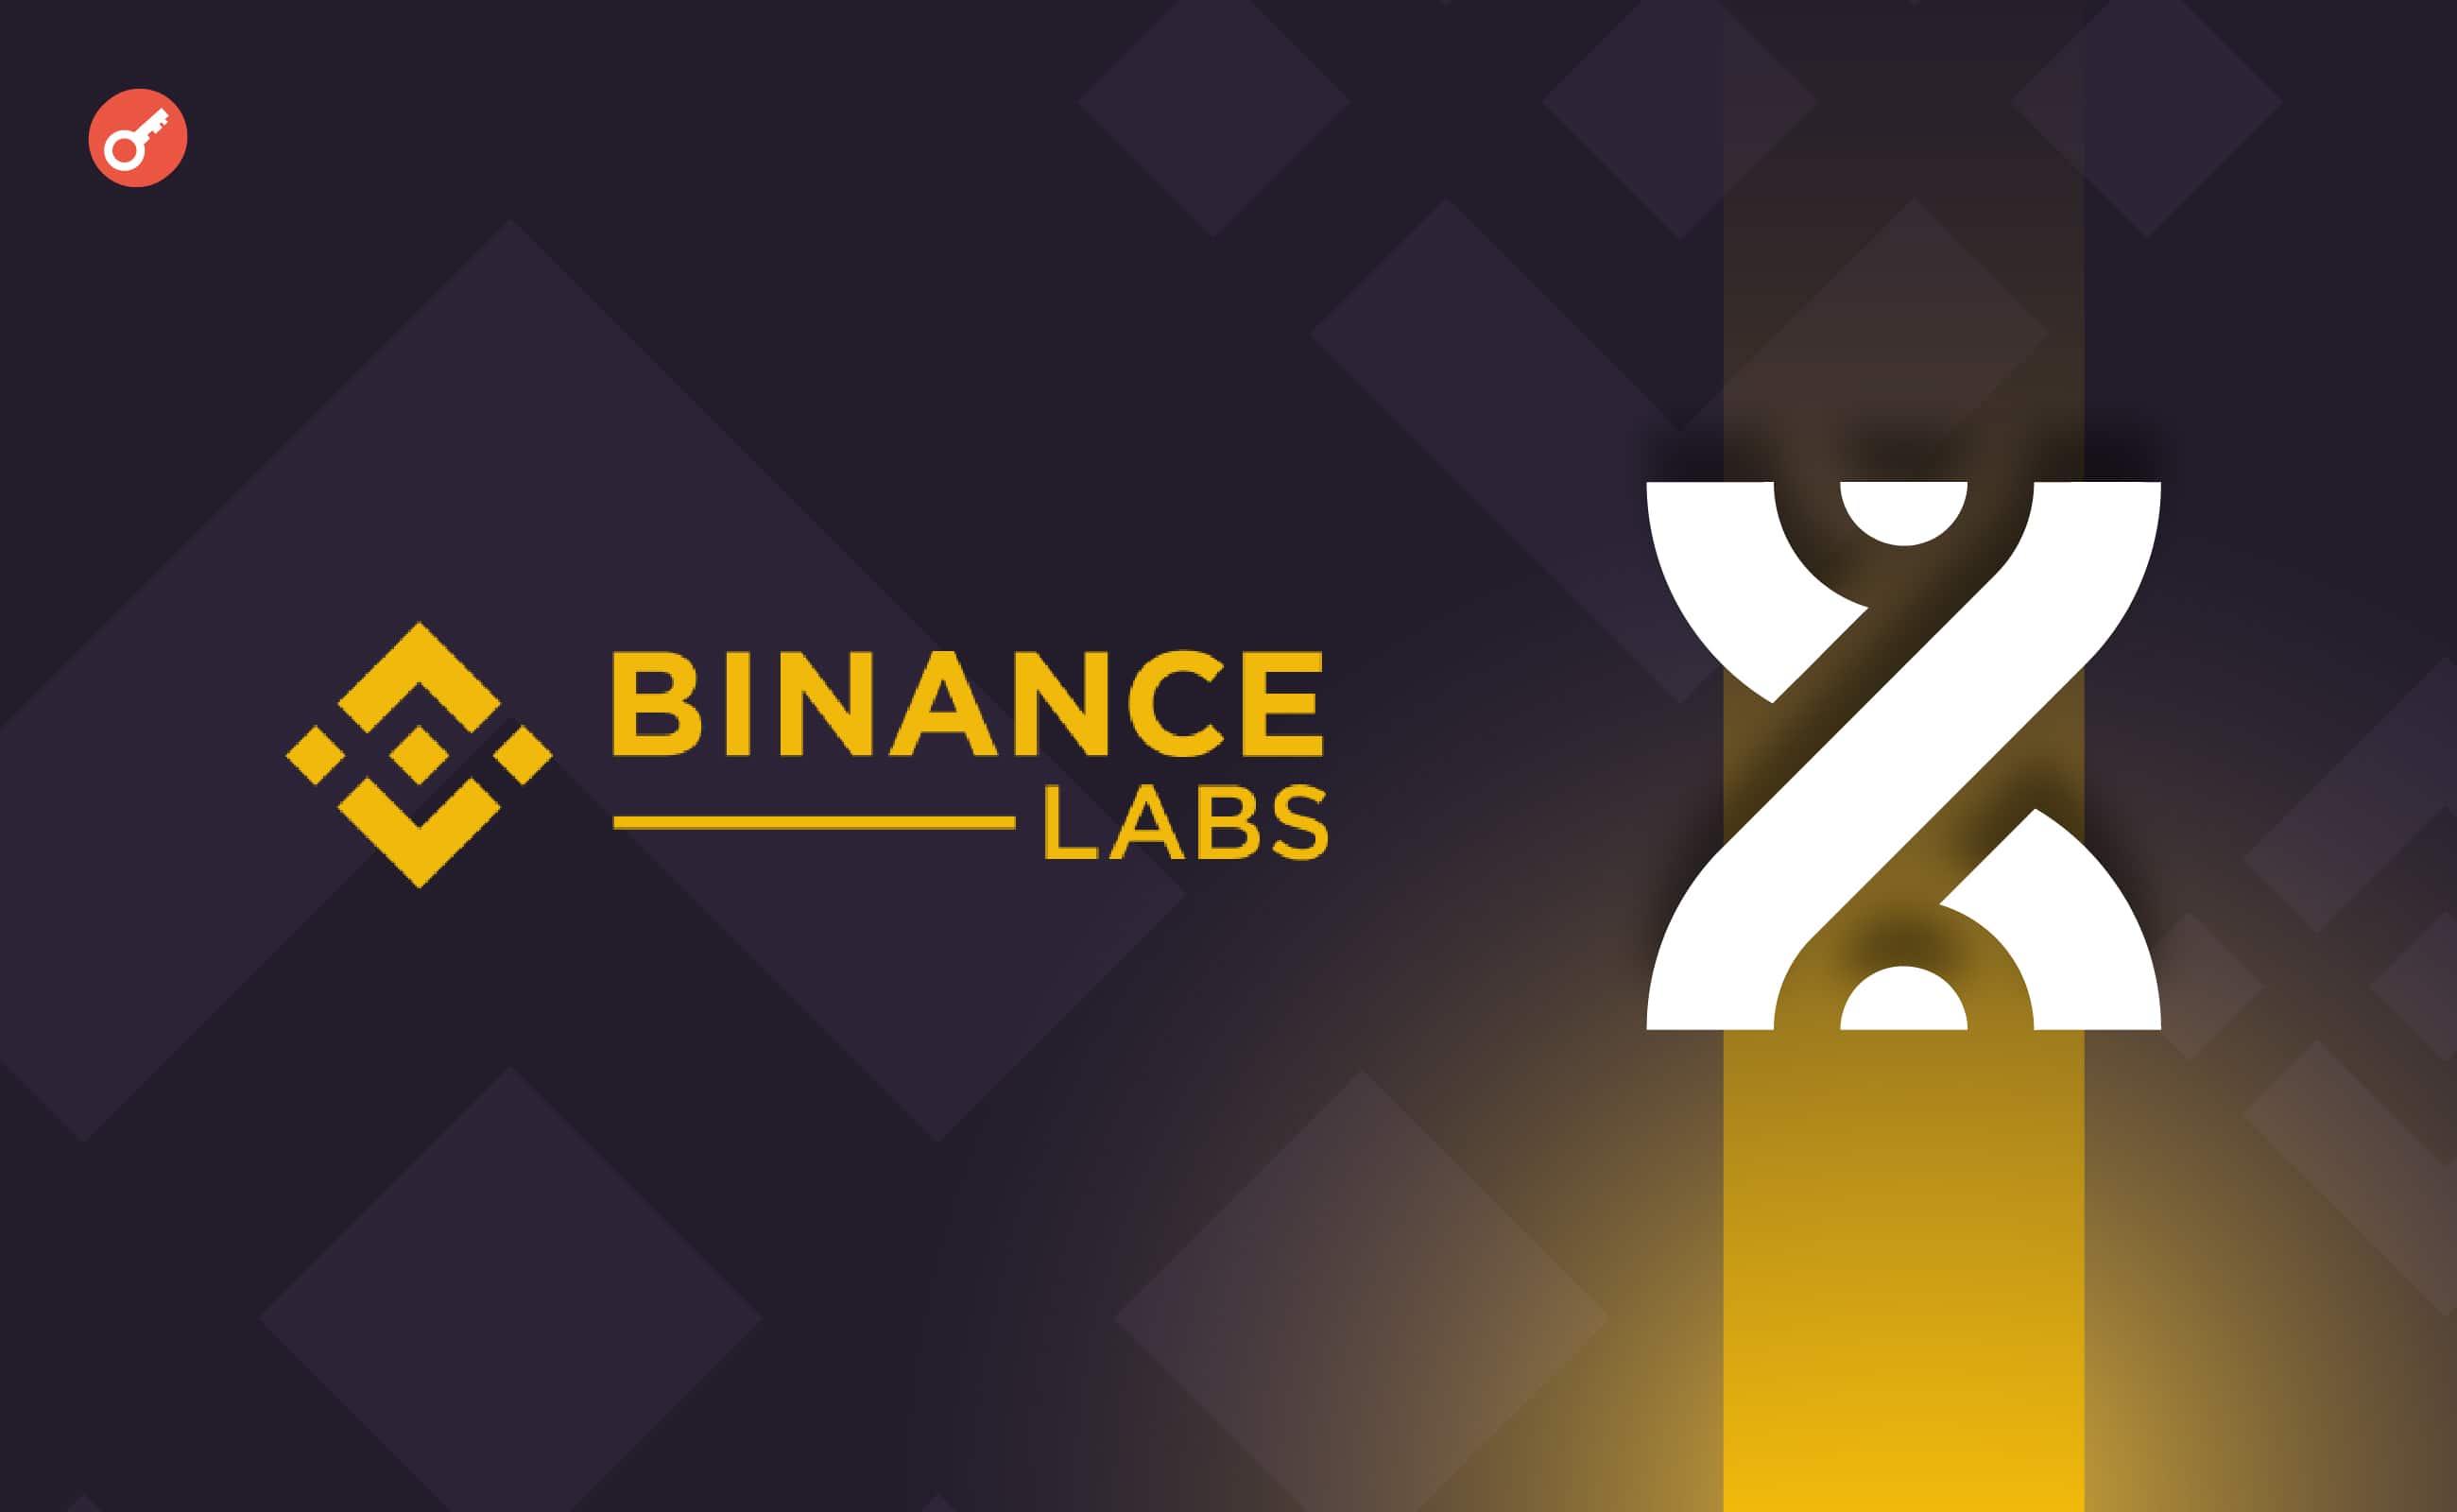 Binance Labs инвестировала в протокол рестейкинга биткоина BounceBit. Заглавный коллаж новости.